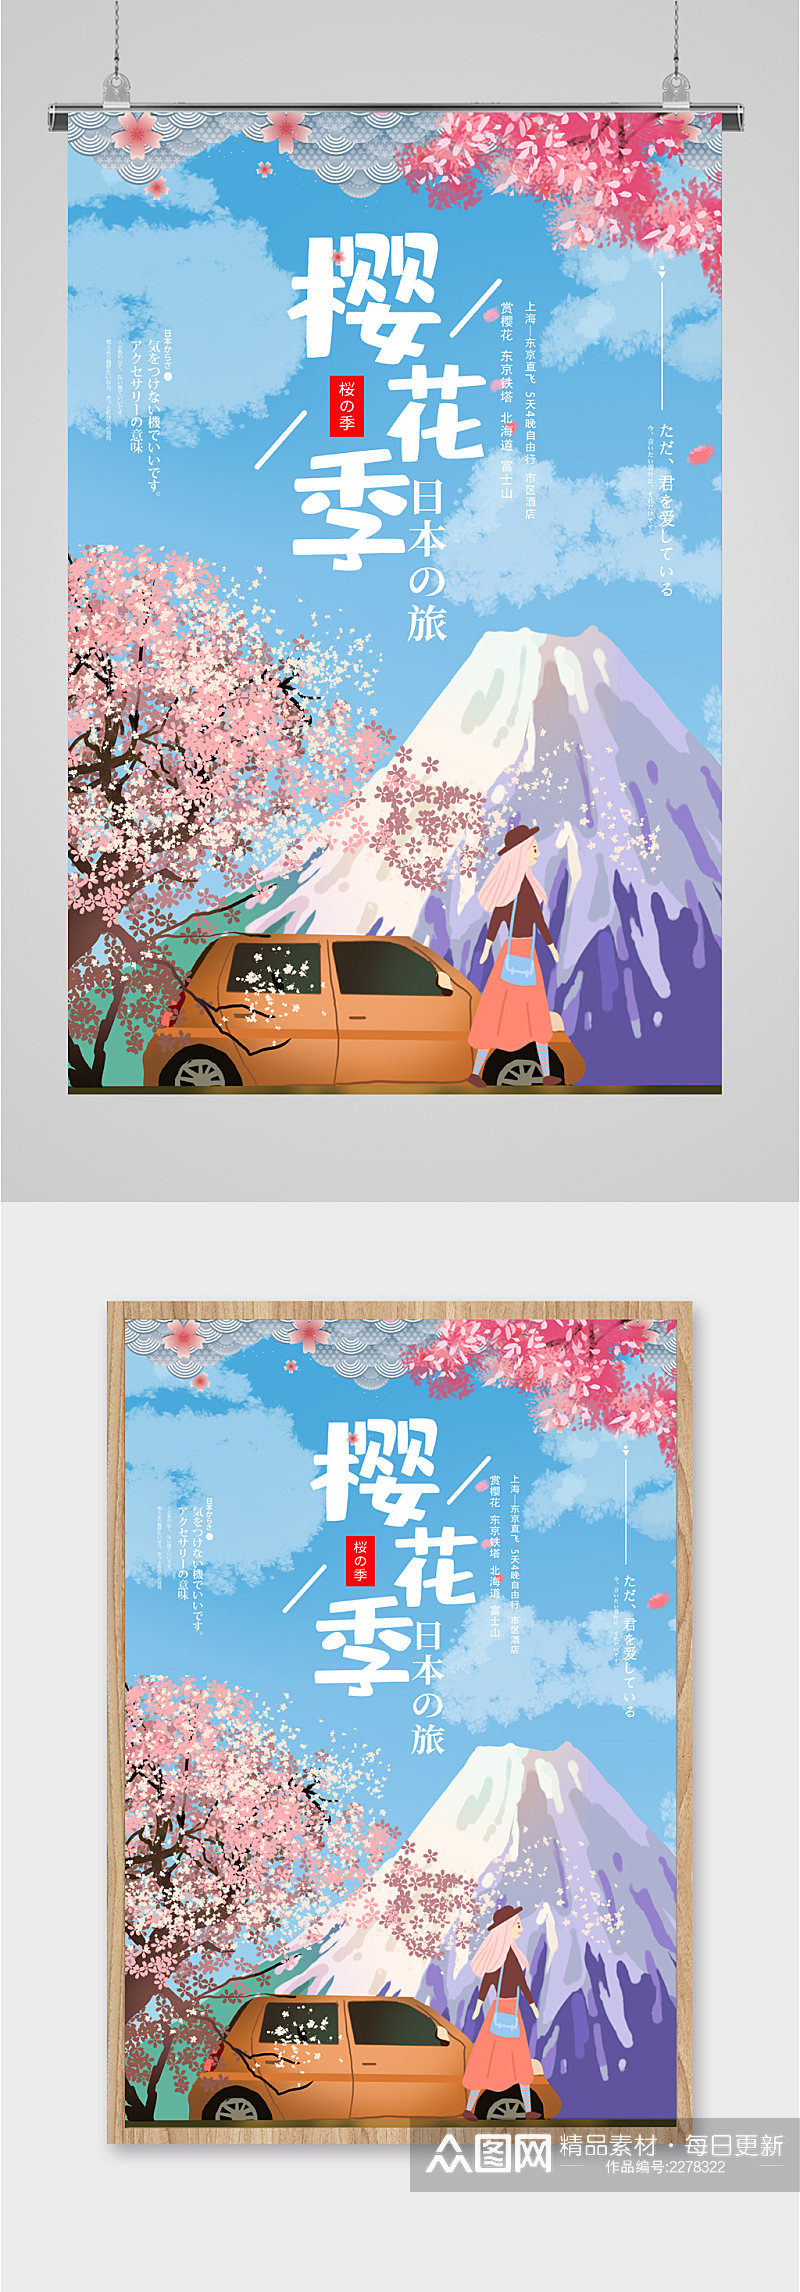 樱花季日本插画旅游海报素材